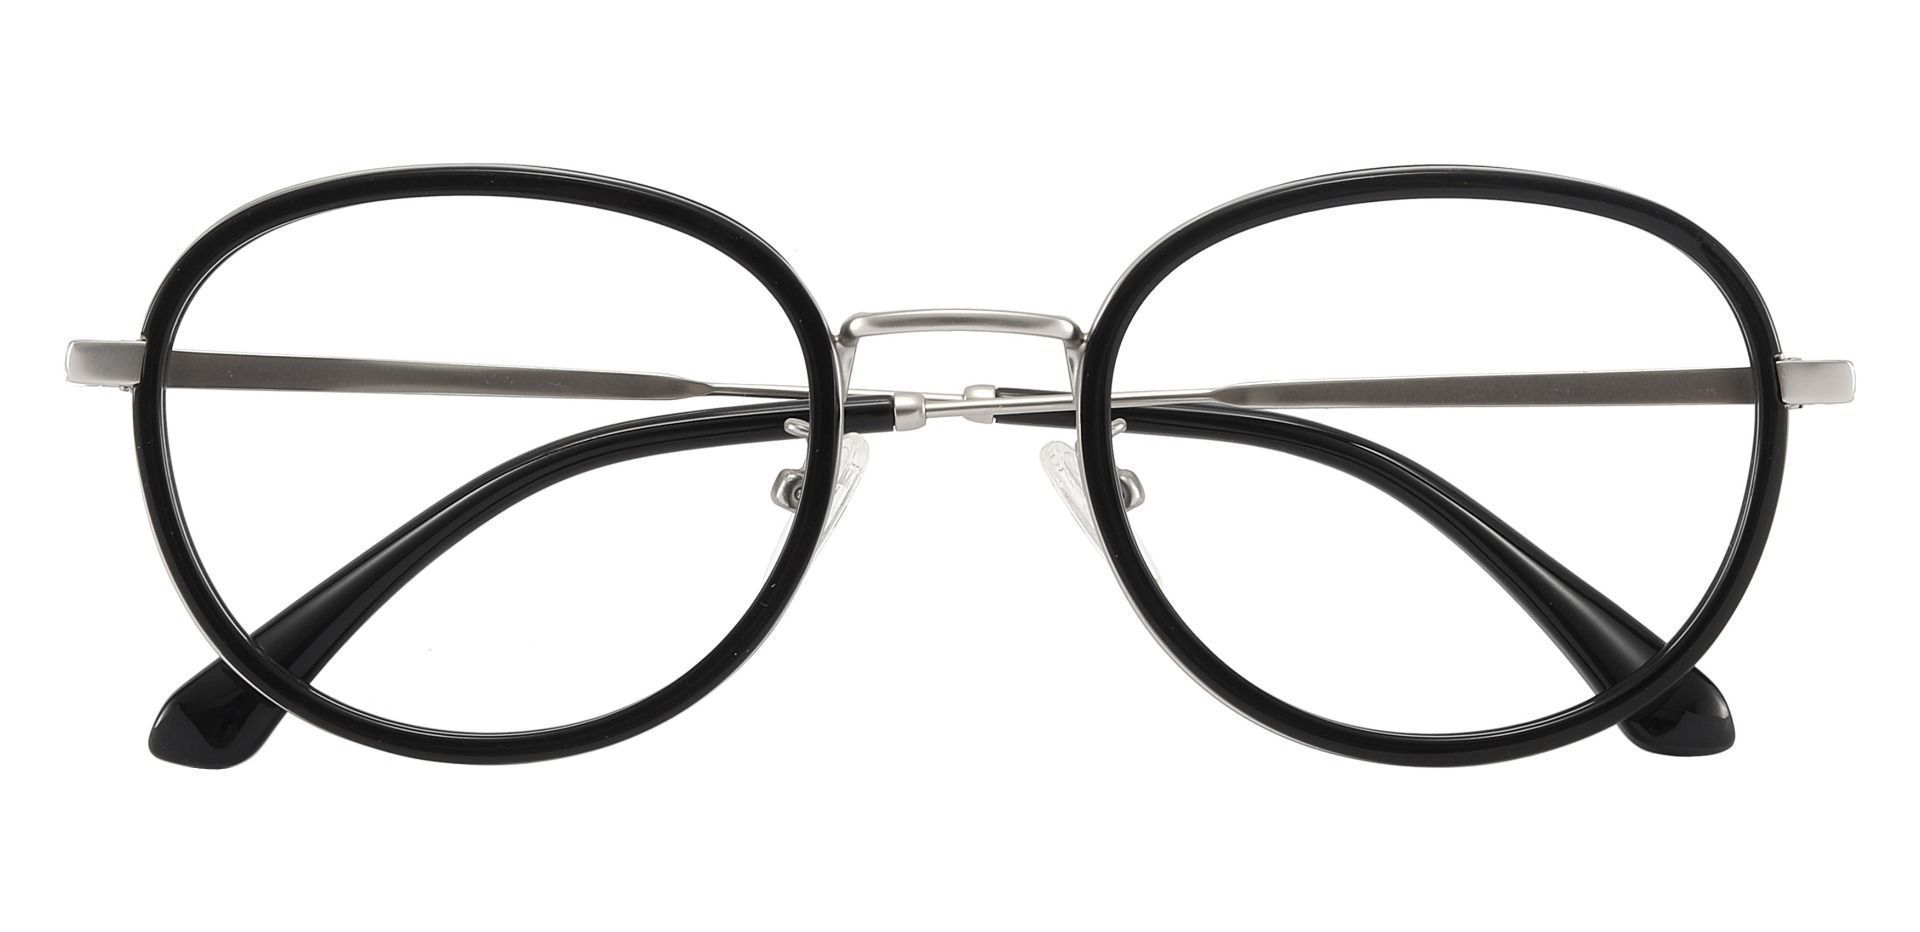 Edmore Oval Non-Rx Glasses - Black